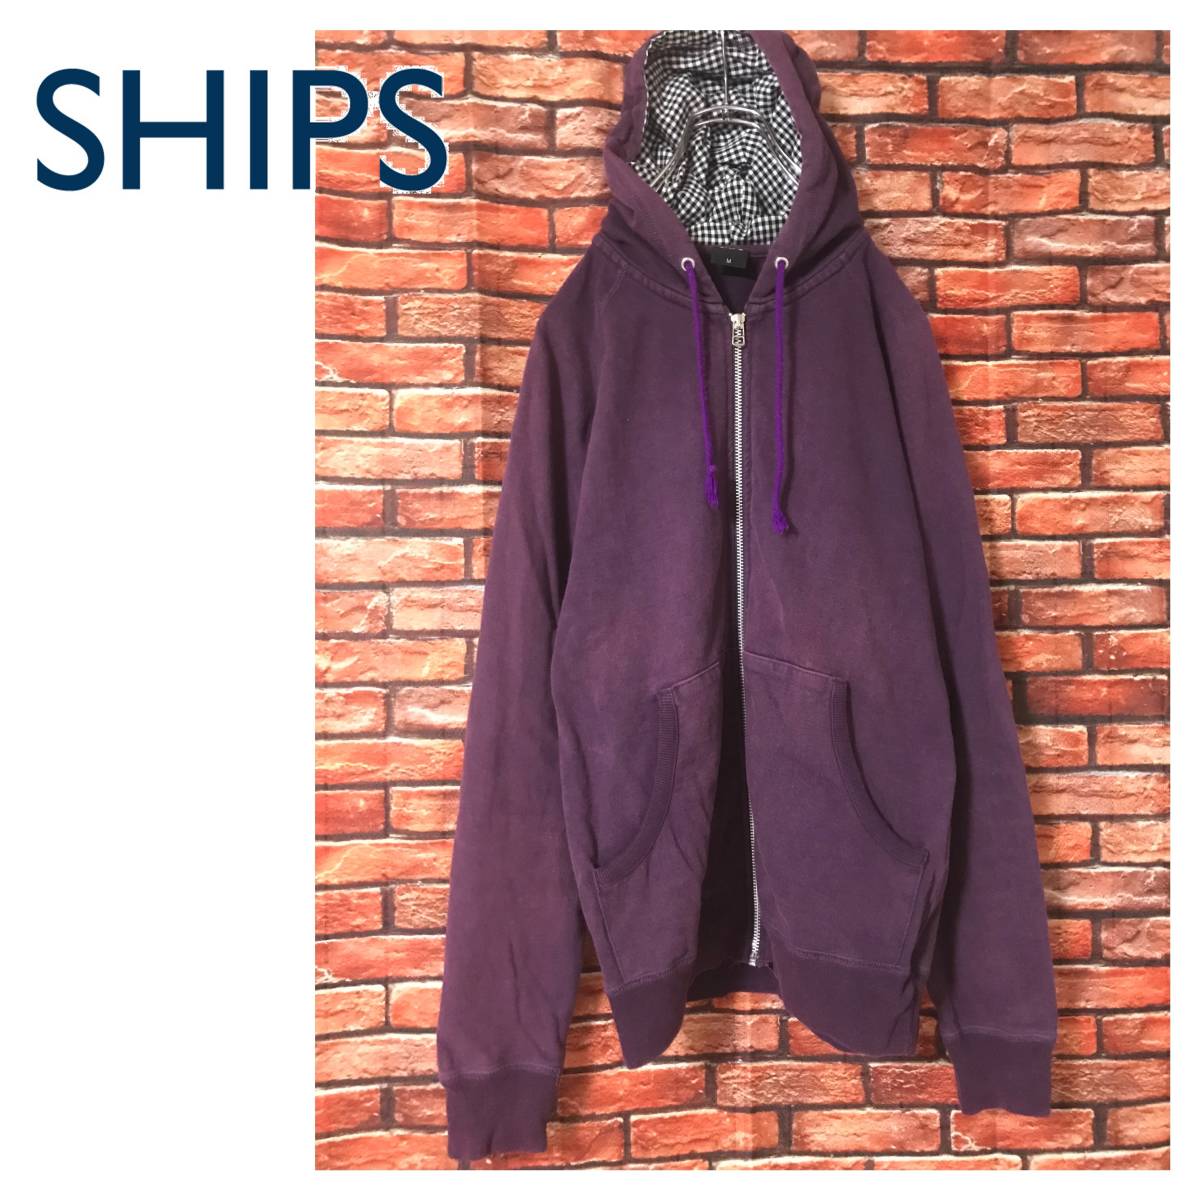 *SHIPS Ships cotton Parker purple 